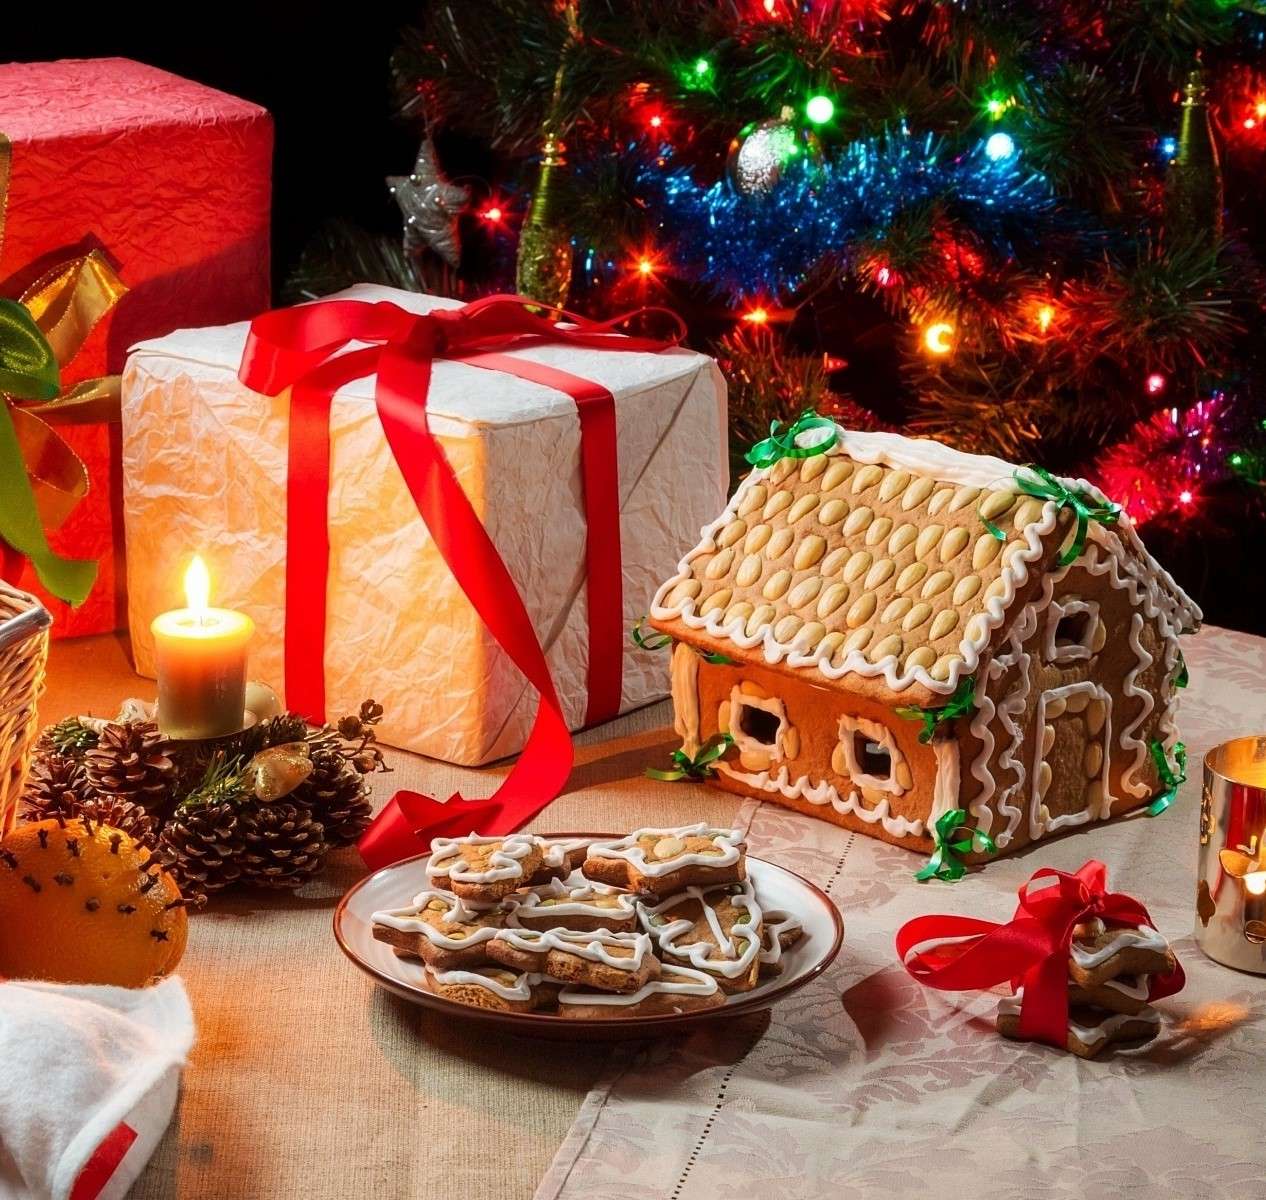 Pan de jengibre y regalos navideños. rompecabezas en línea